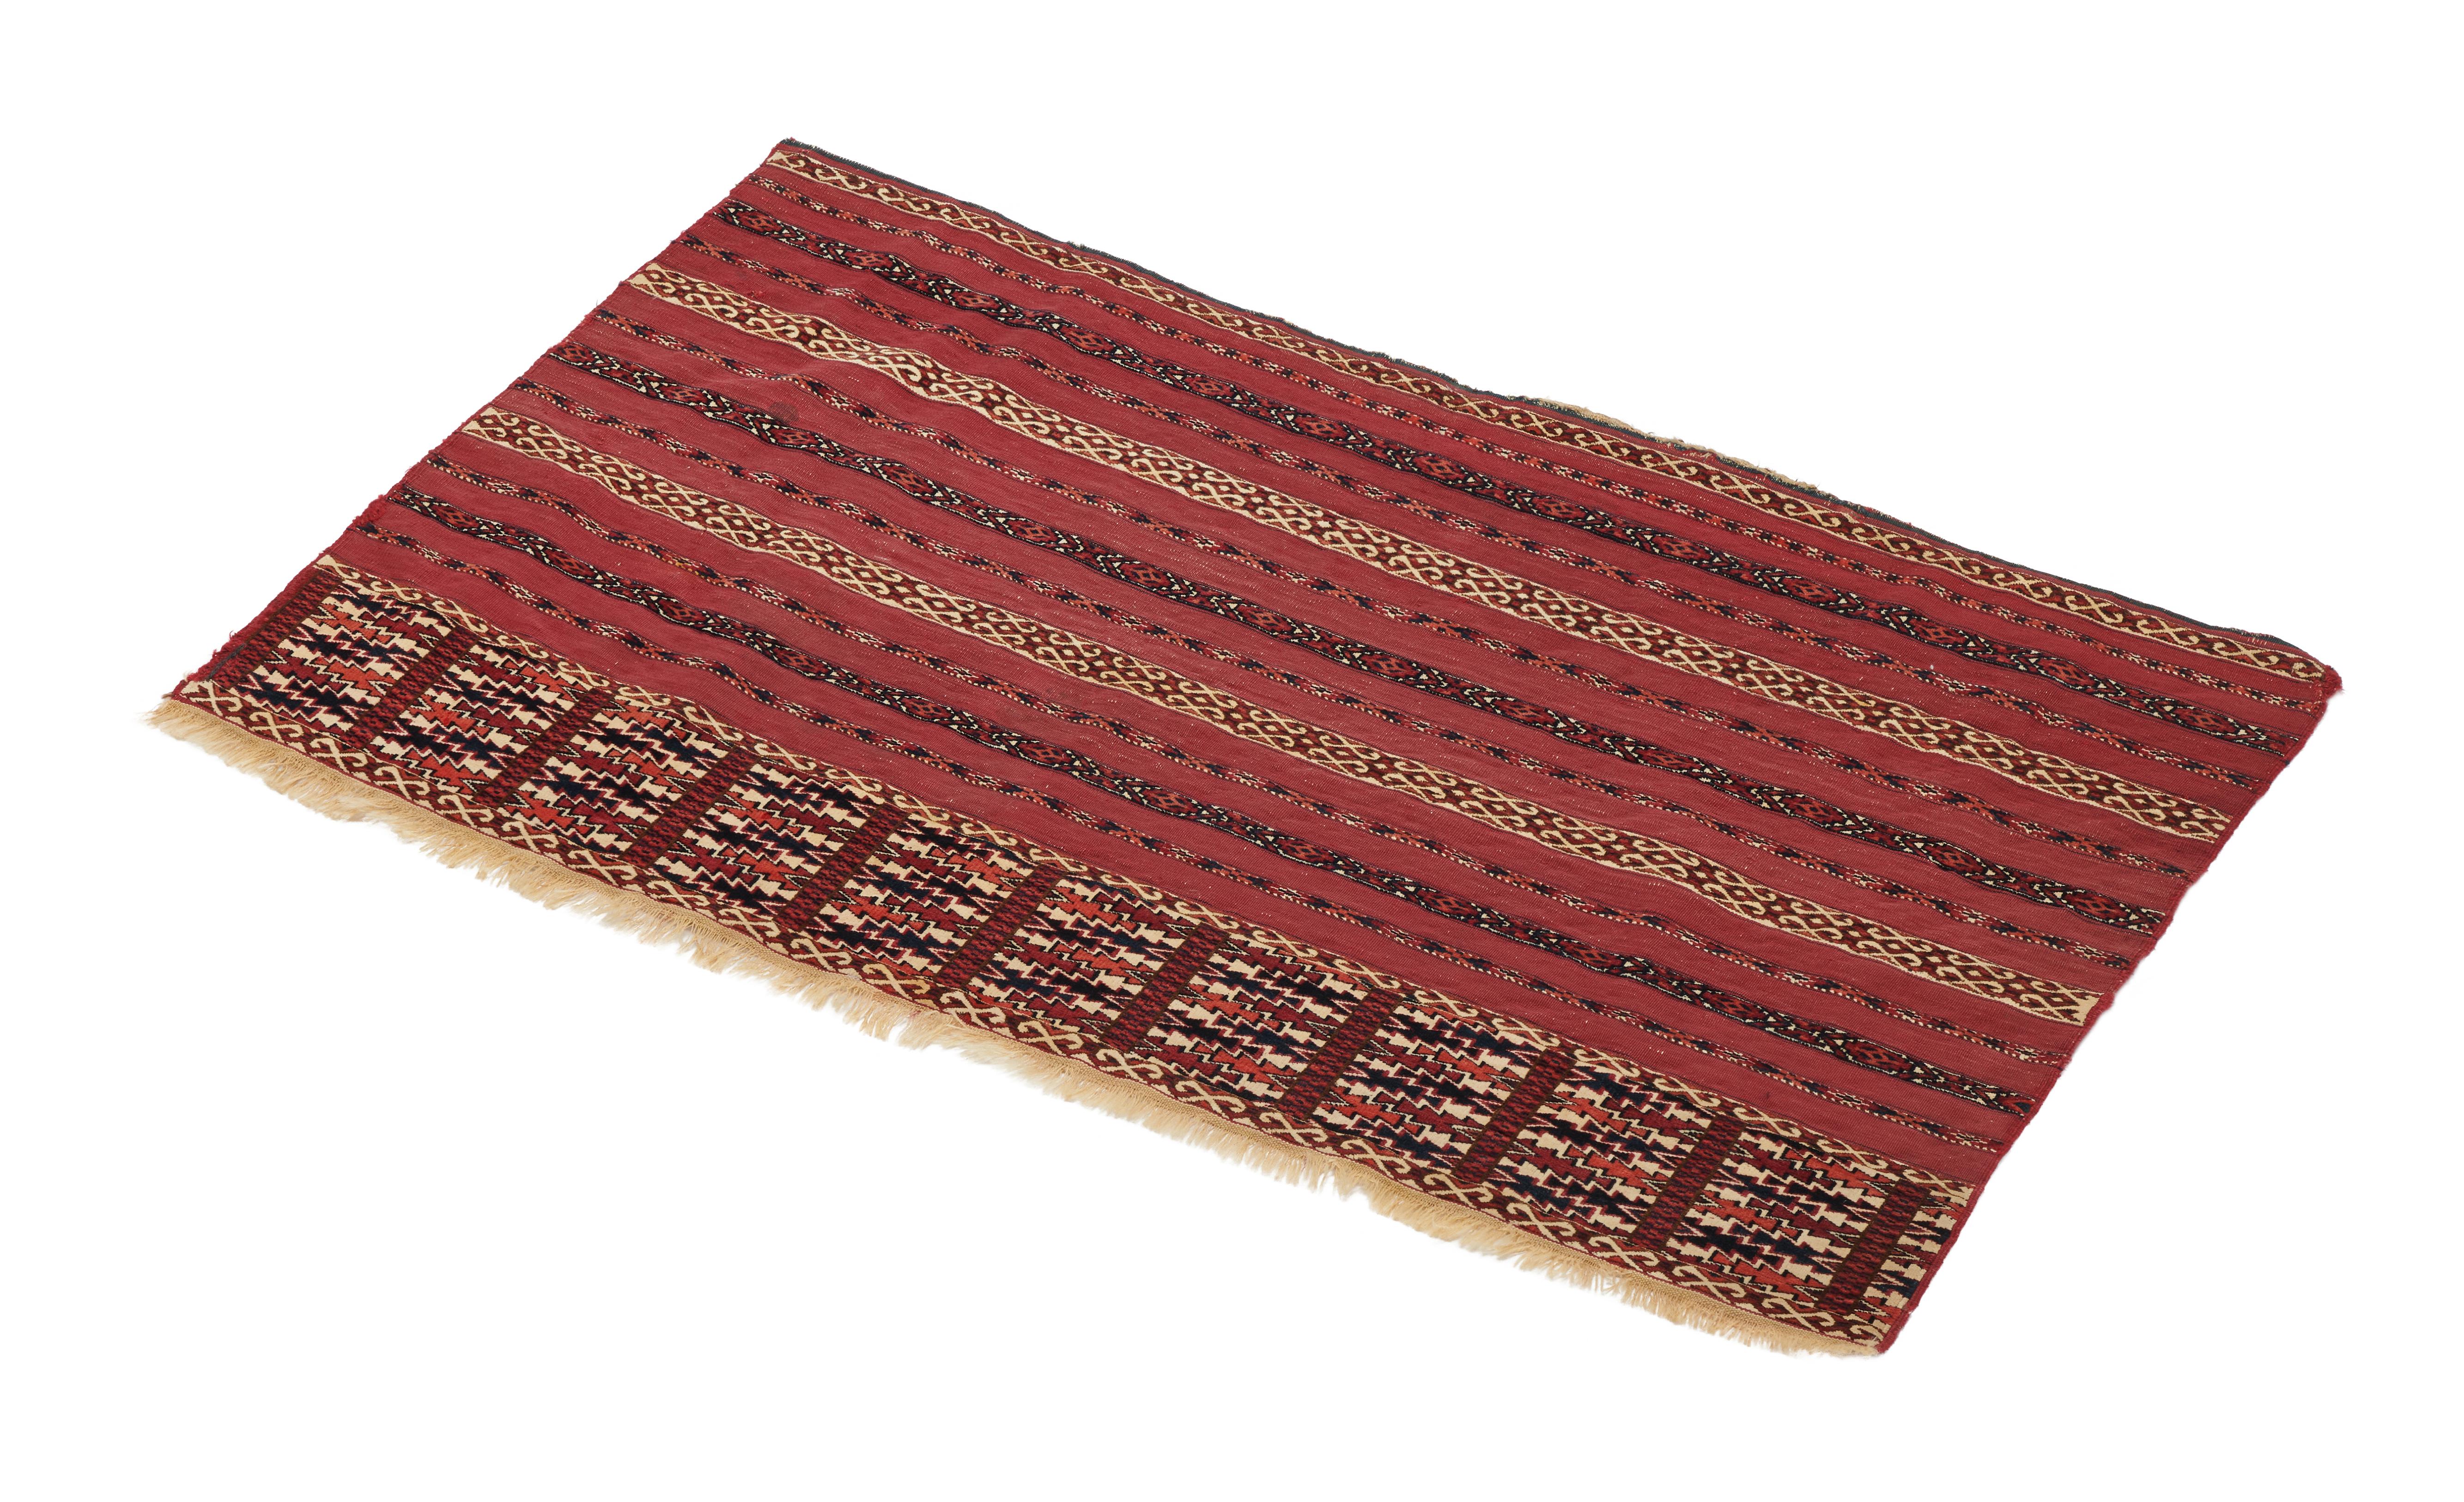 Die rechteckigen Teppiche wie dieser wurden von allen turkmenischen Stämmen hergestellt. Sie waren der wichtigste Bodenbelag in turkmenischen Zelten und wurden mit dem Hauptgul, dem wichtigsten Symbol des jeweiligen Stammes, verziert. Die